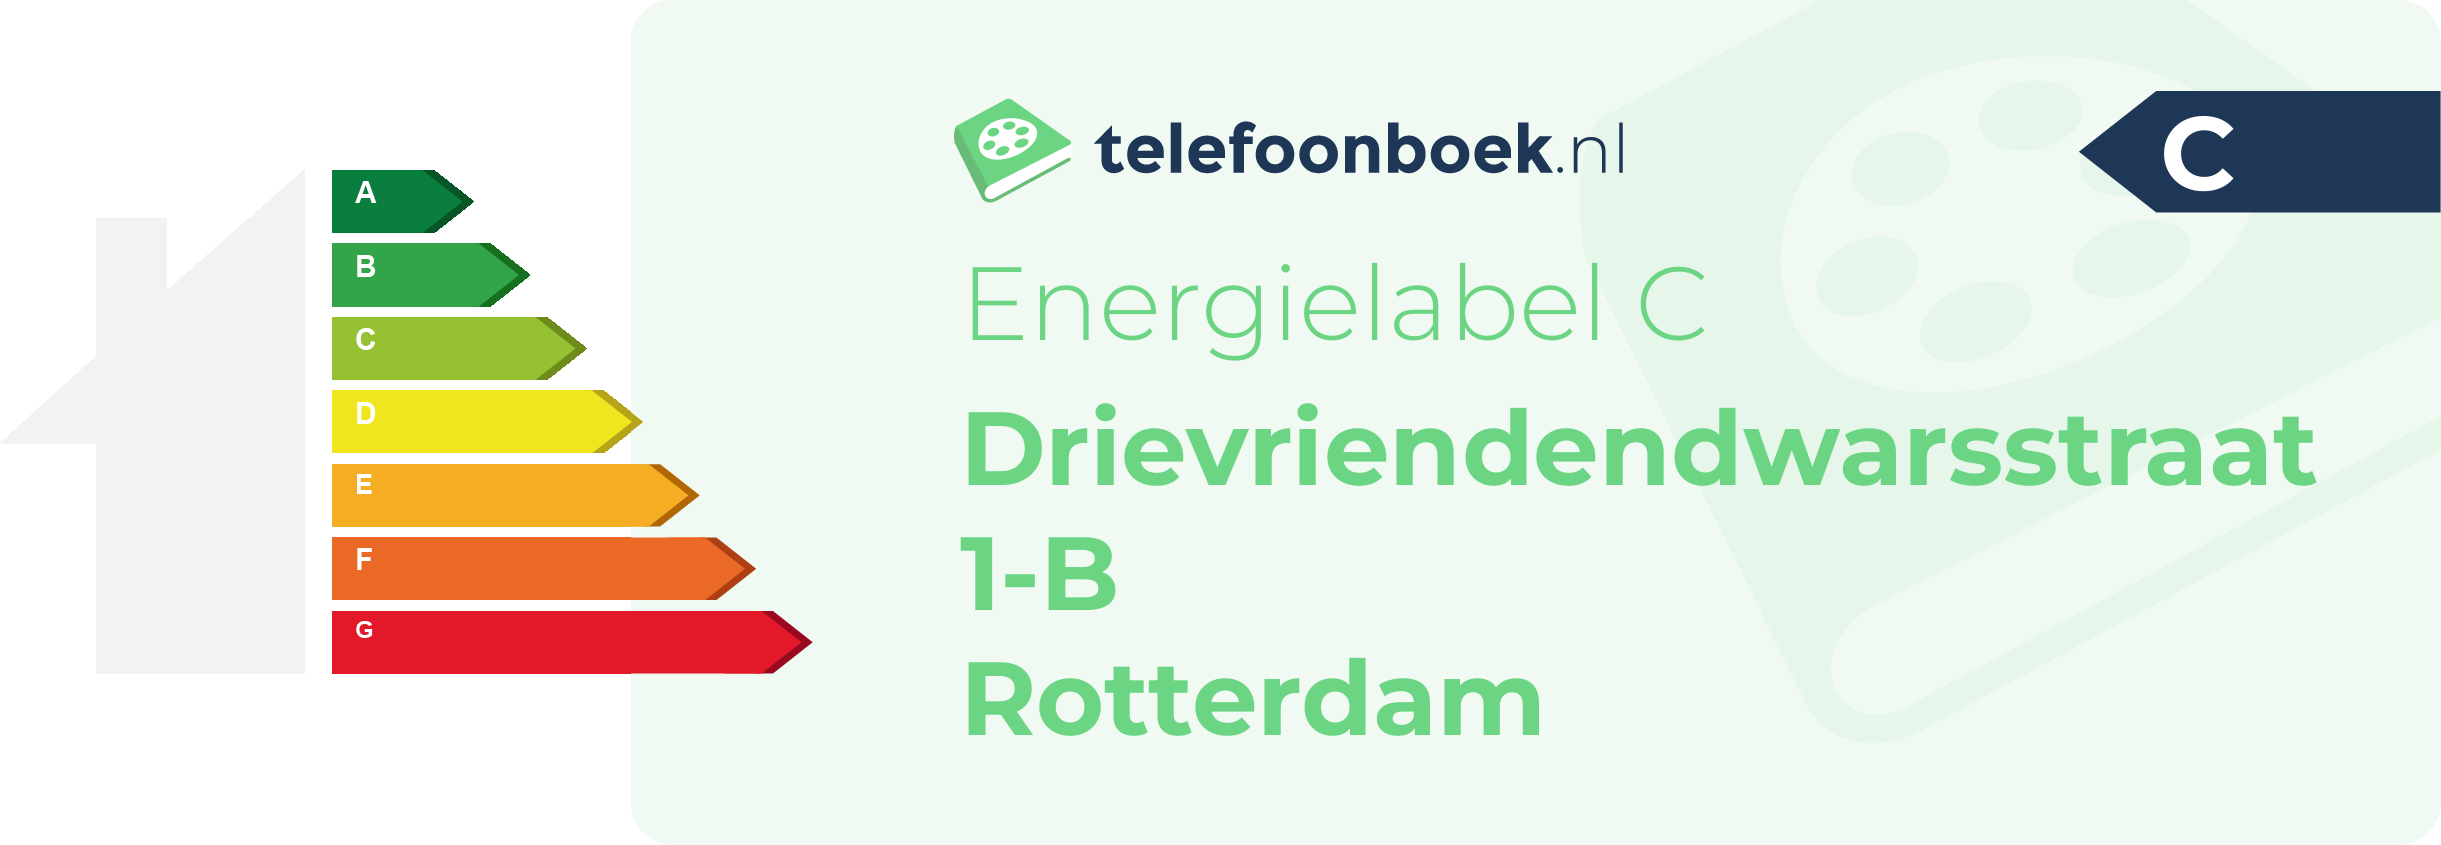 Energielabel Drievriendendwarsstraat 1-B Rotterdam